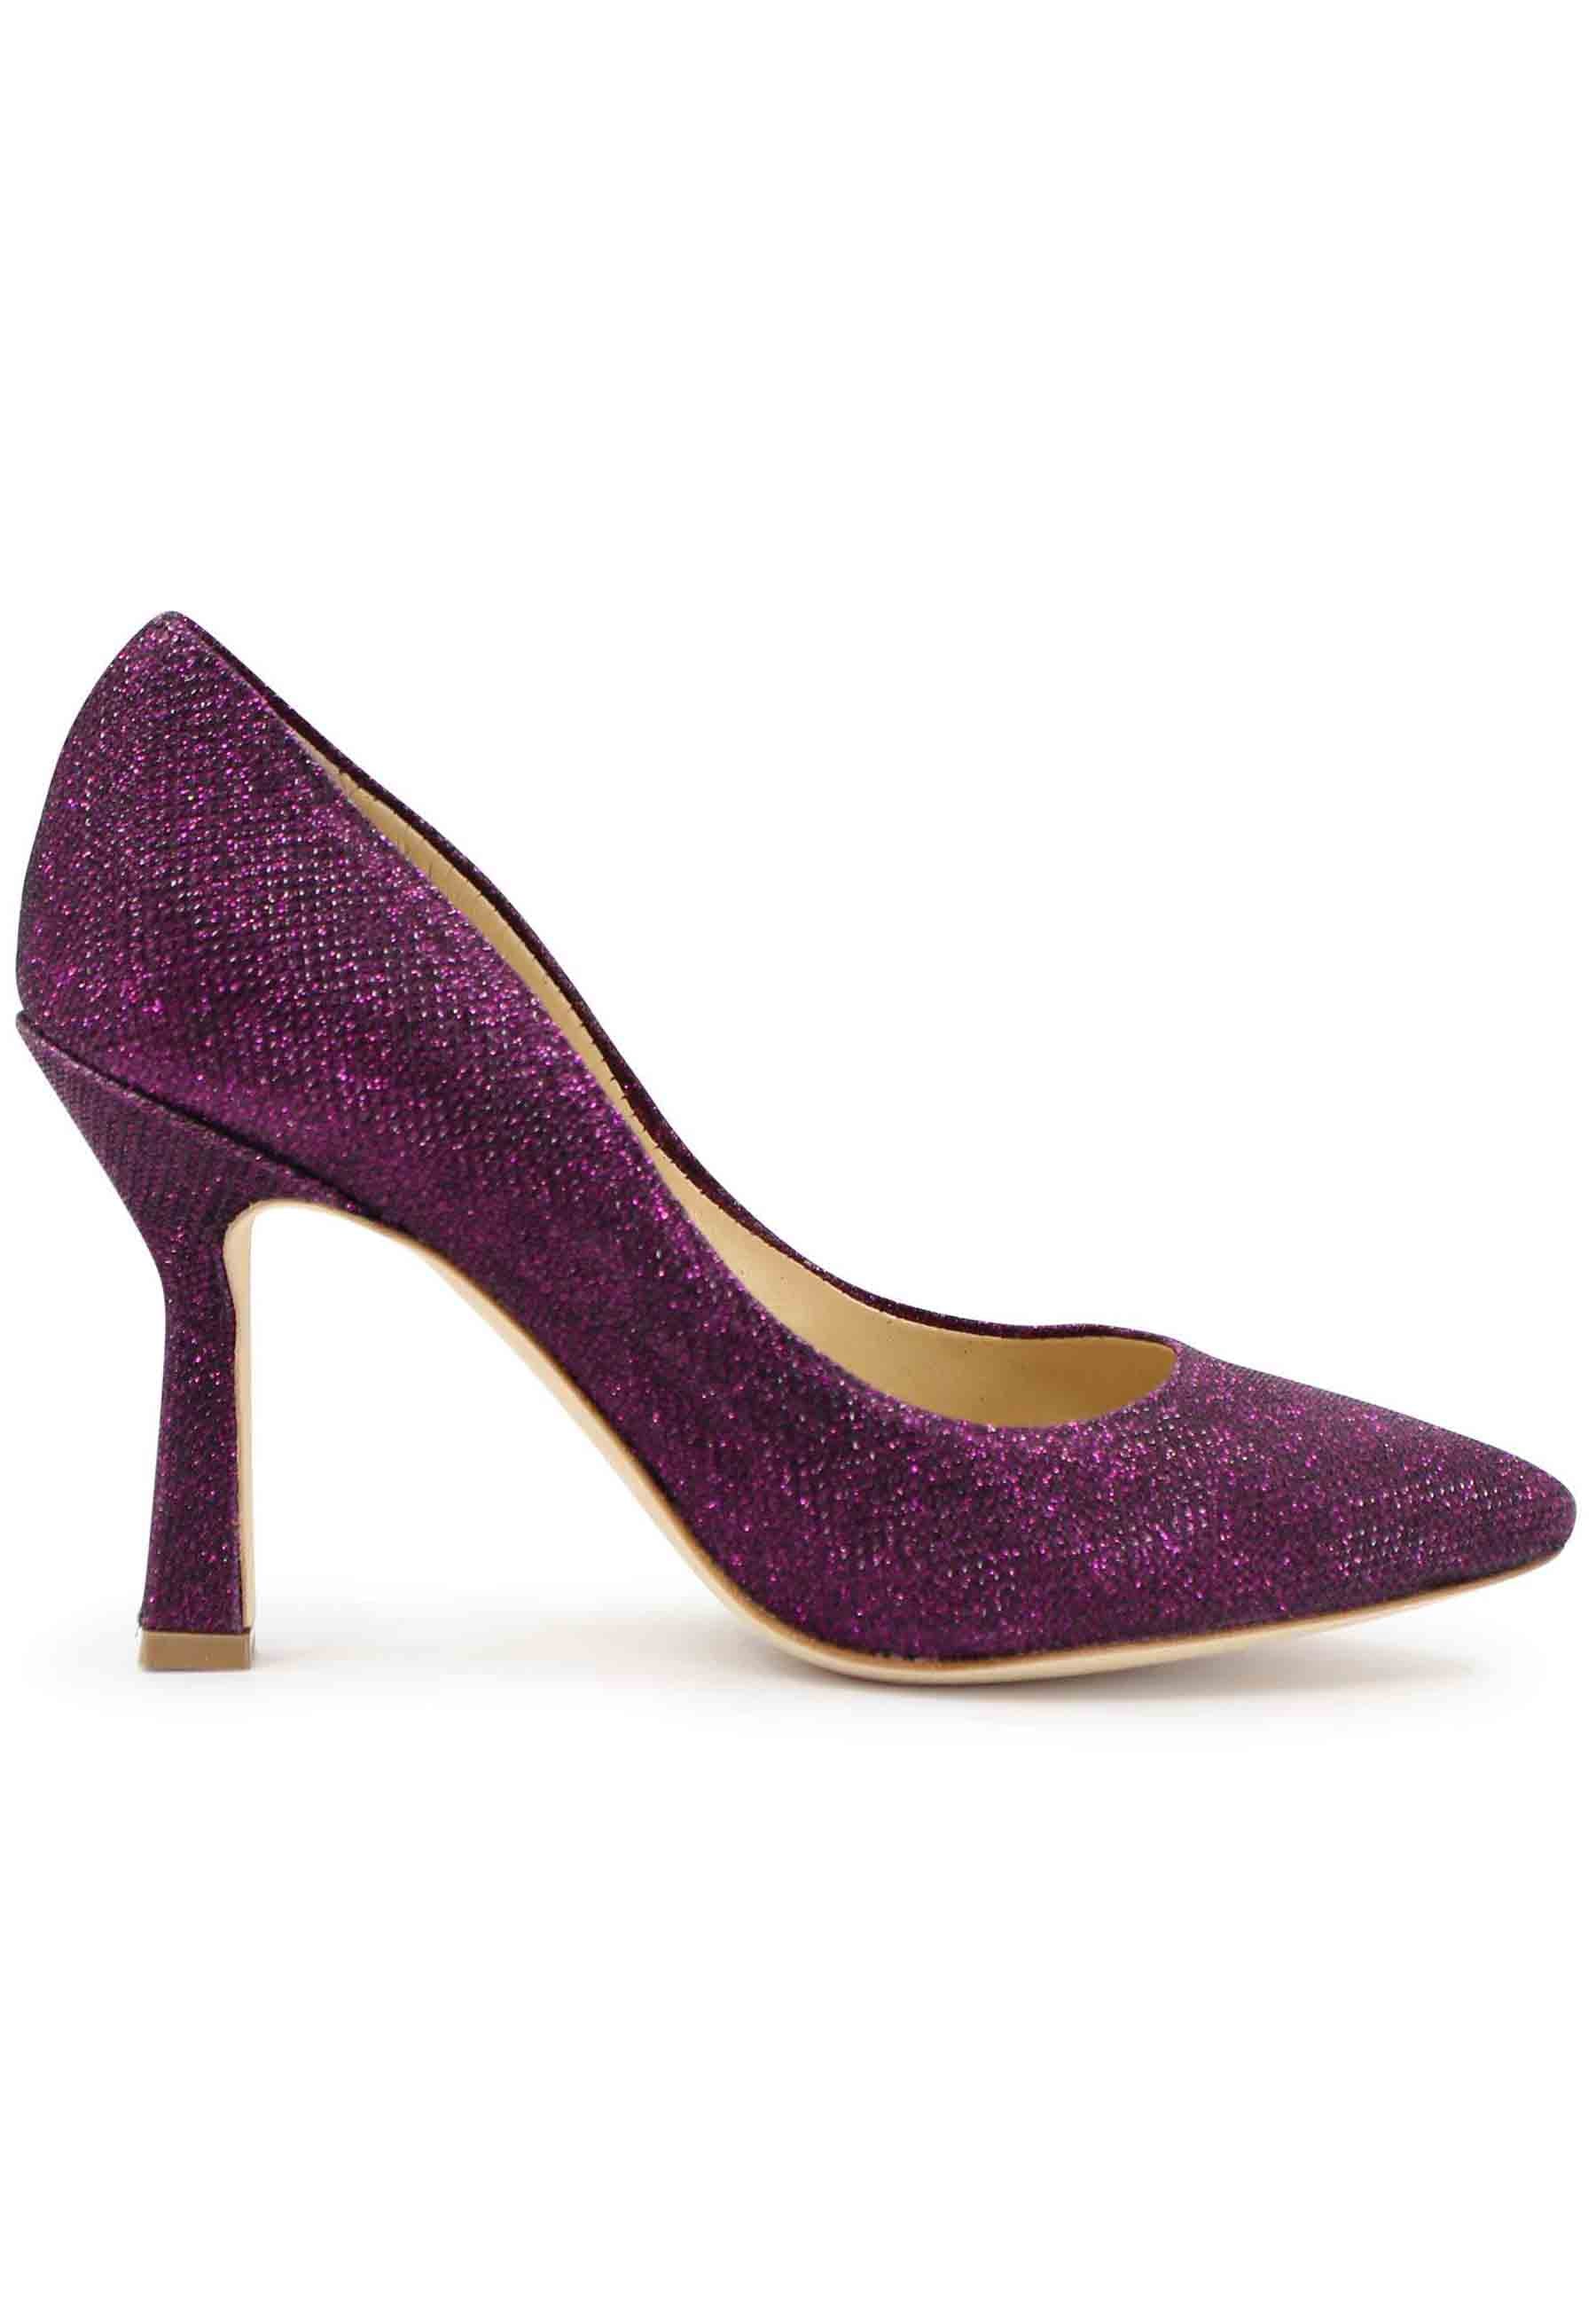 DE1002/RT women's pumps in purple lux fabric with high heel